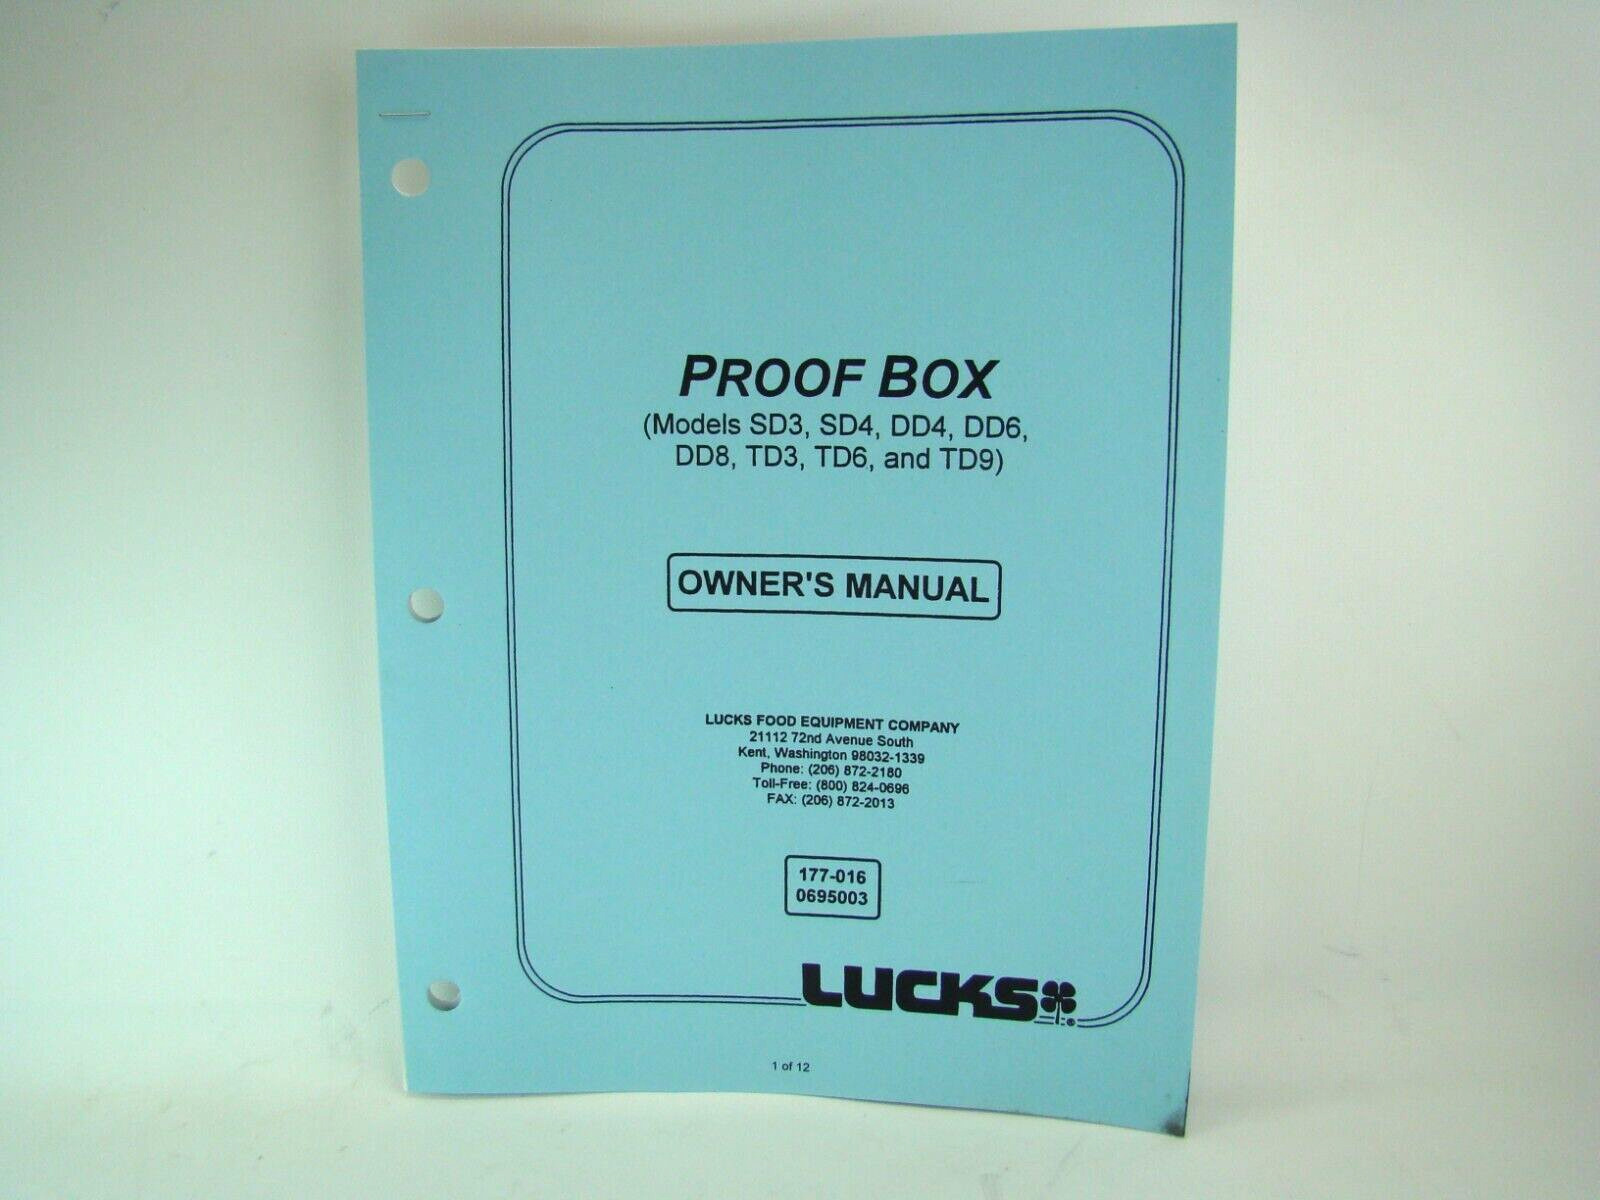 Lucks Proof Box Owners Manual SD3, 4, DD4, DD6, DD8, TD3, TD6, TD9